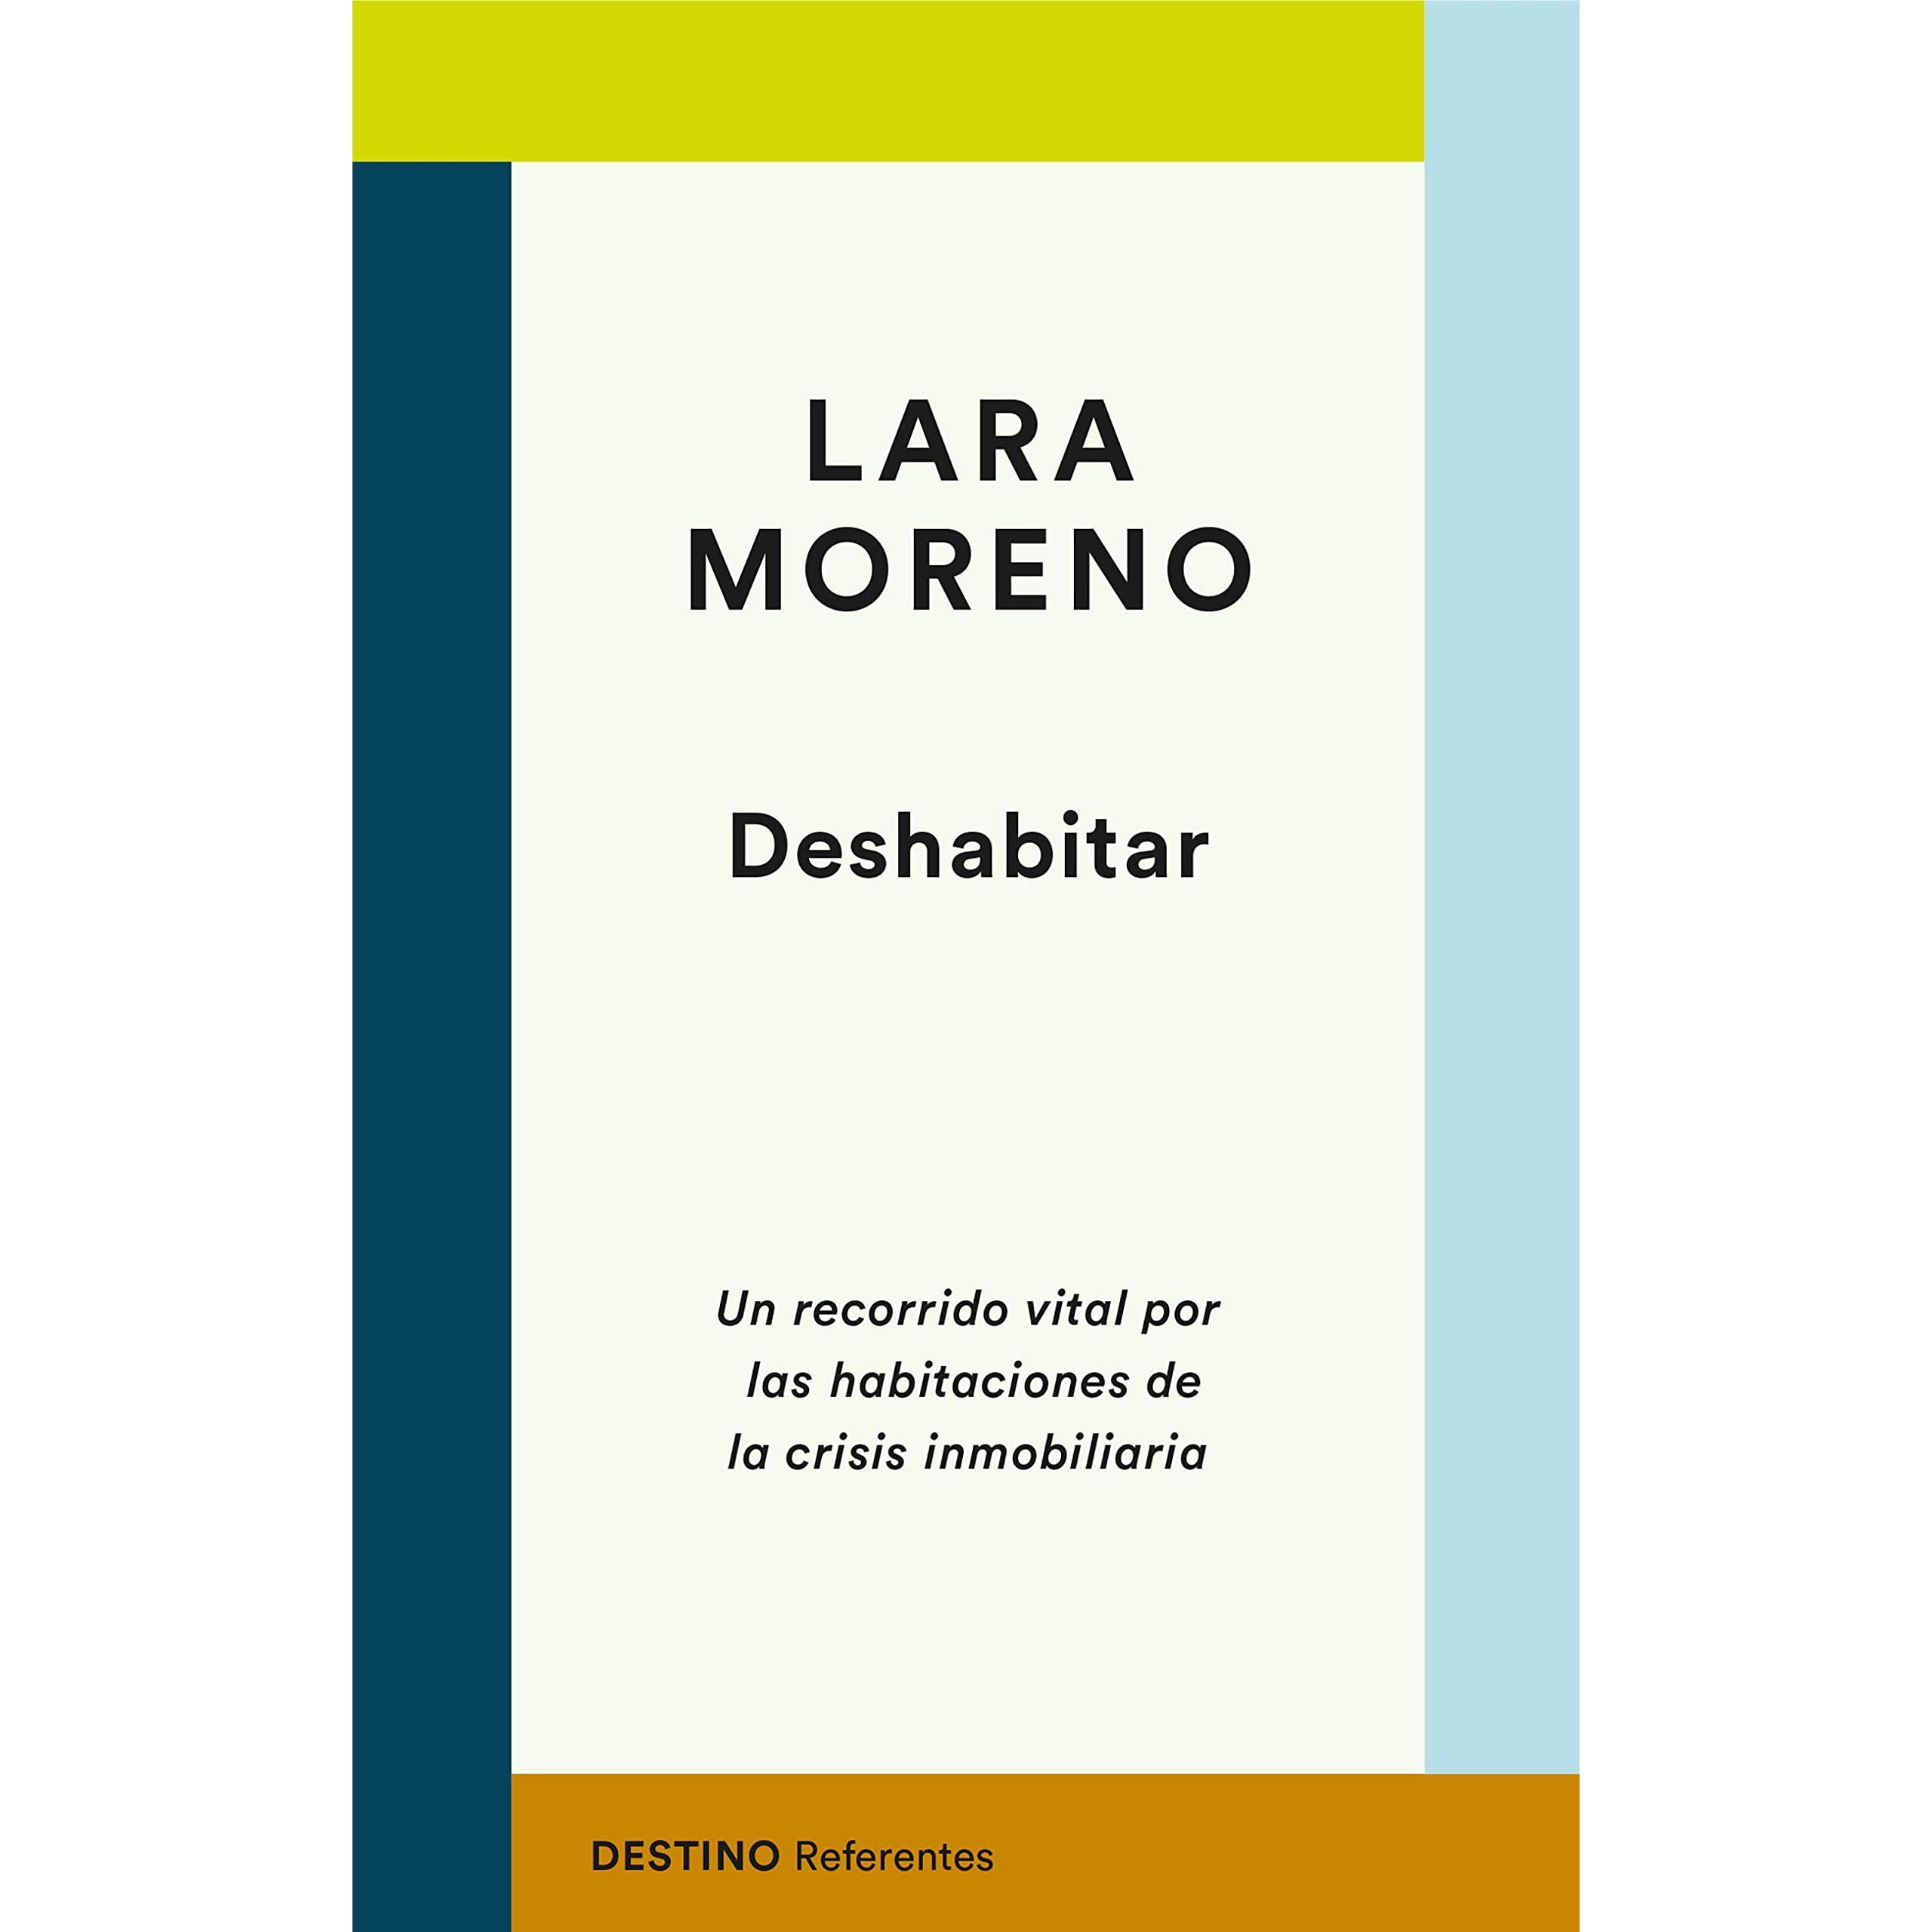 Lara Moreno: “No se entiende que alguien que lleva años trabajando no pueda permitirse vivir de una manera digna por su cuenta”